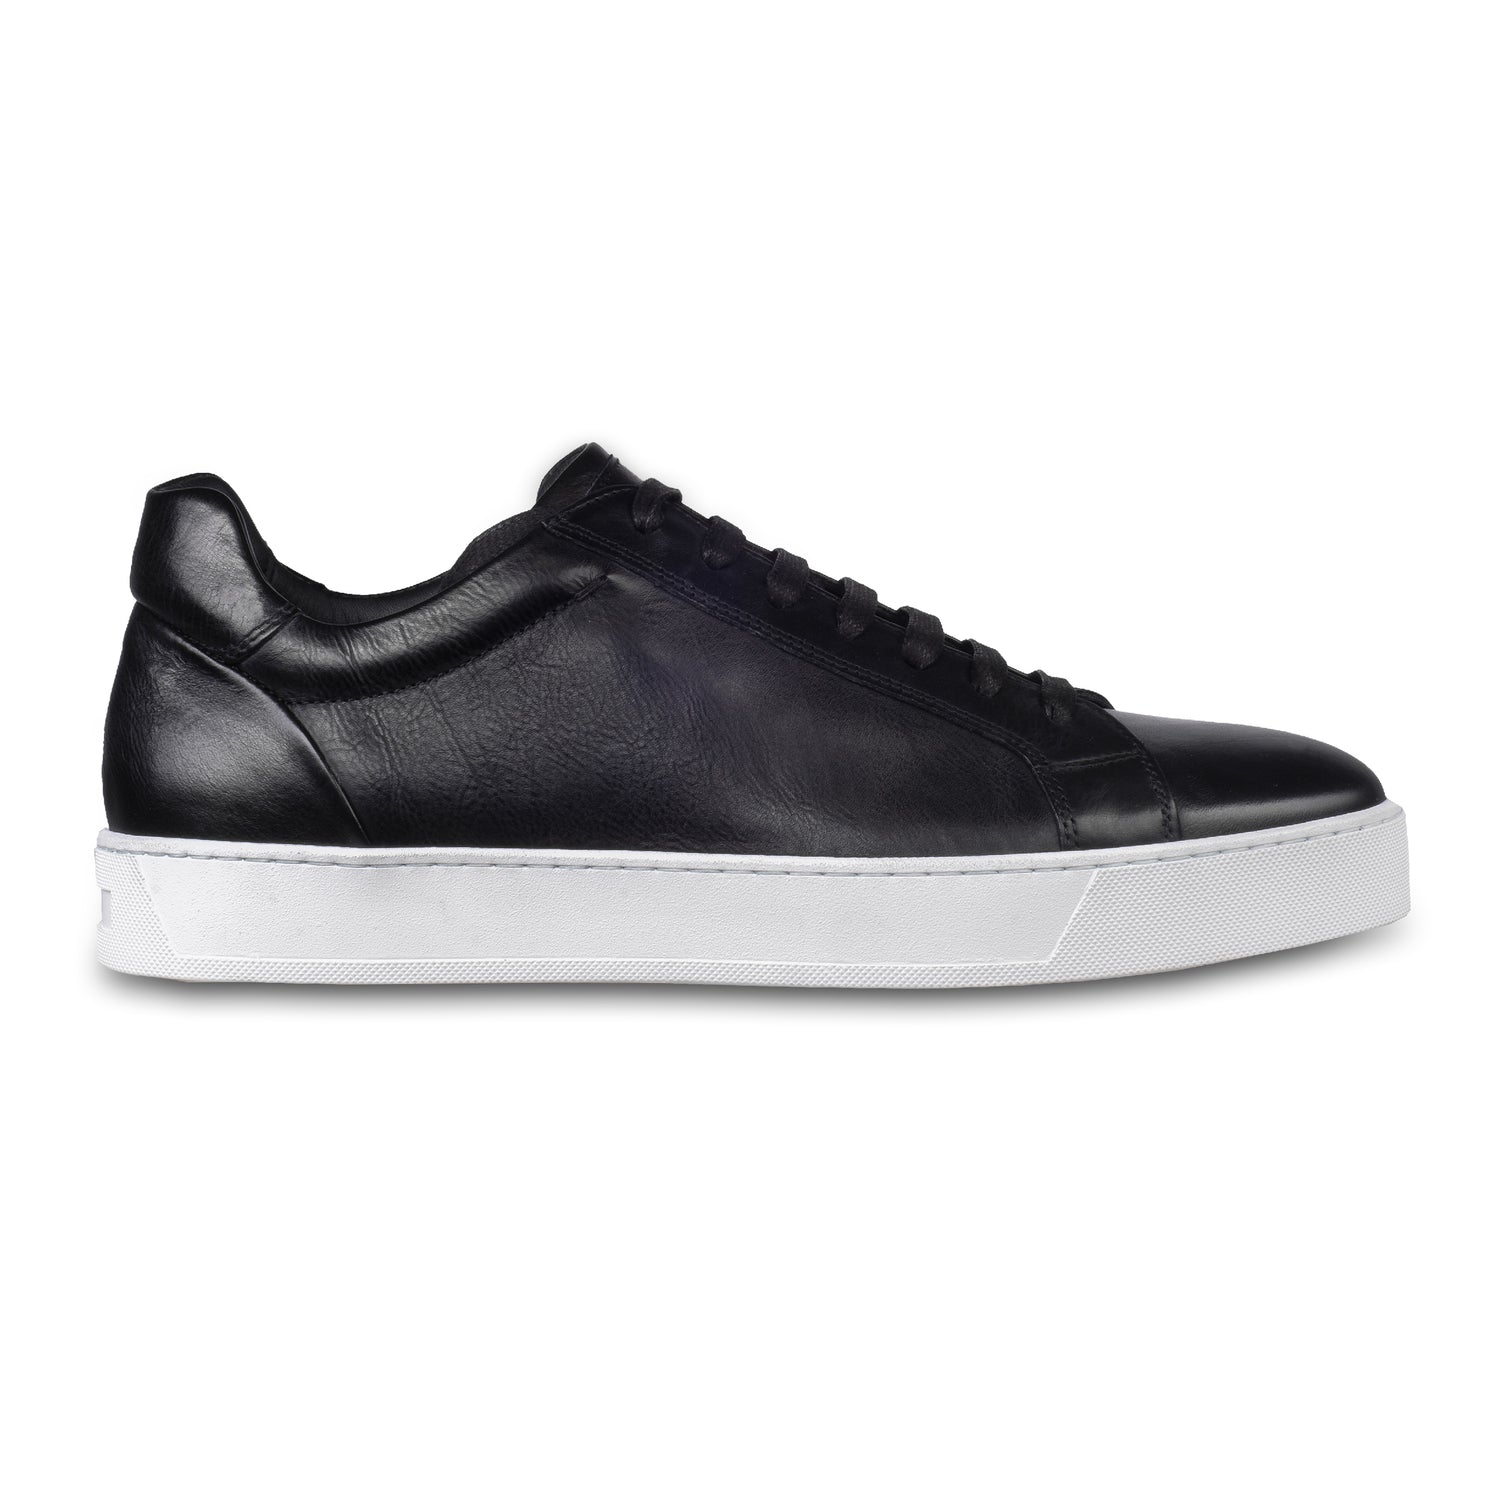 Triverflight – Italienische Herren-Sneaker in schwarz. Aus Kalbsleder handgefertigt. Seitliche Ansicht der Außenseite rechter Schuh.